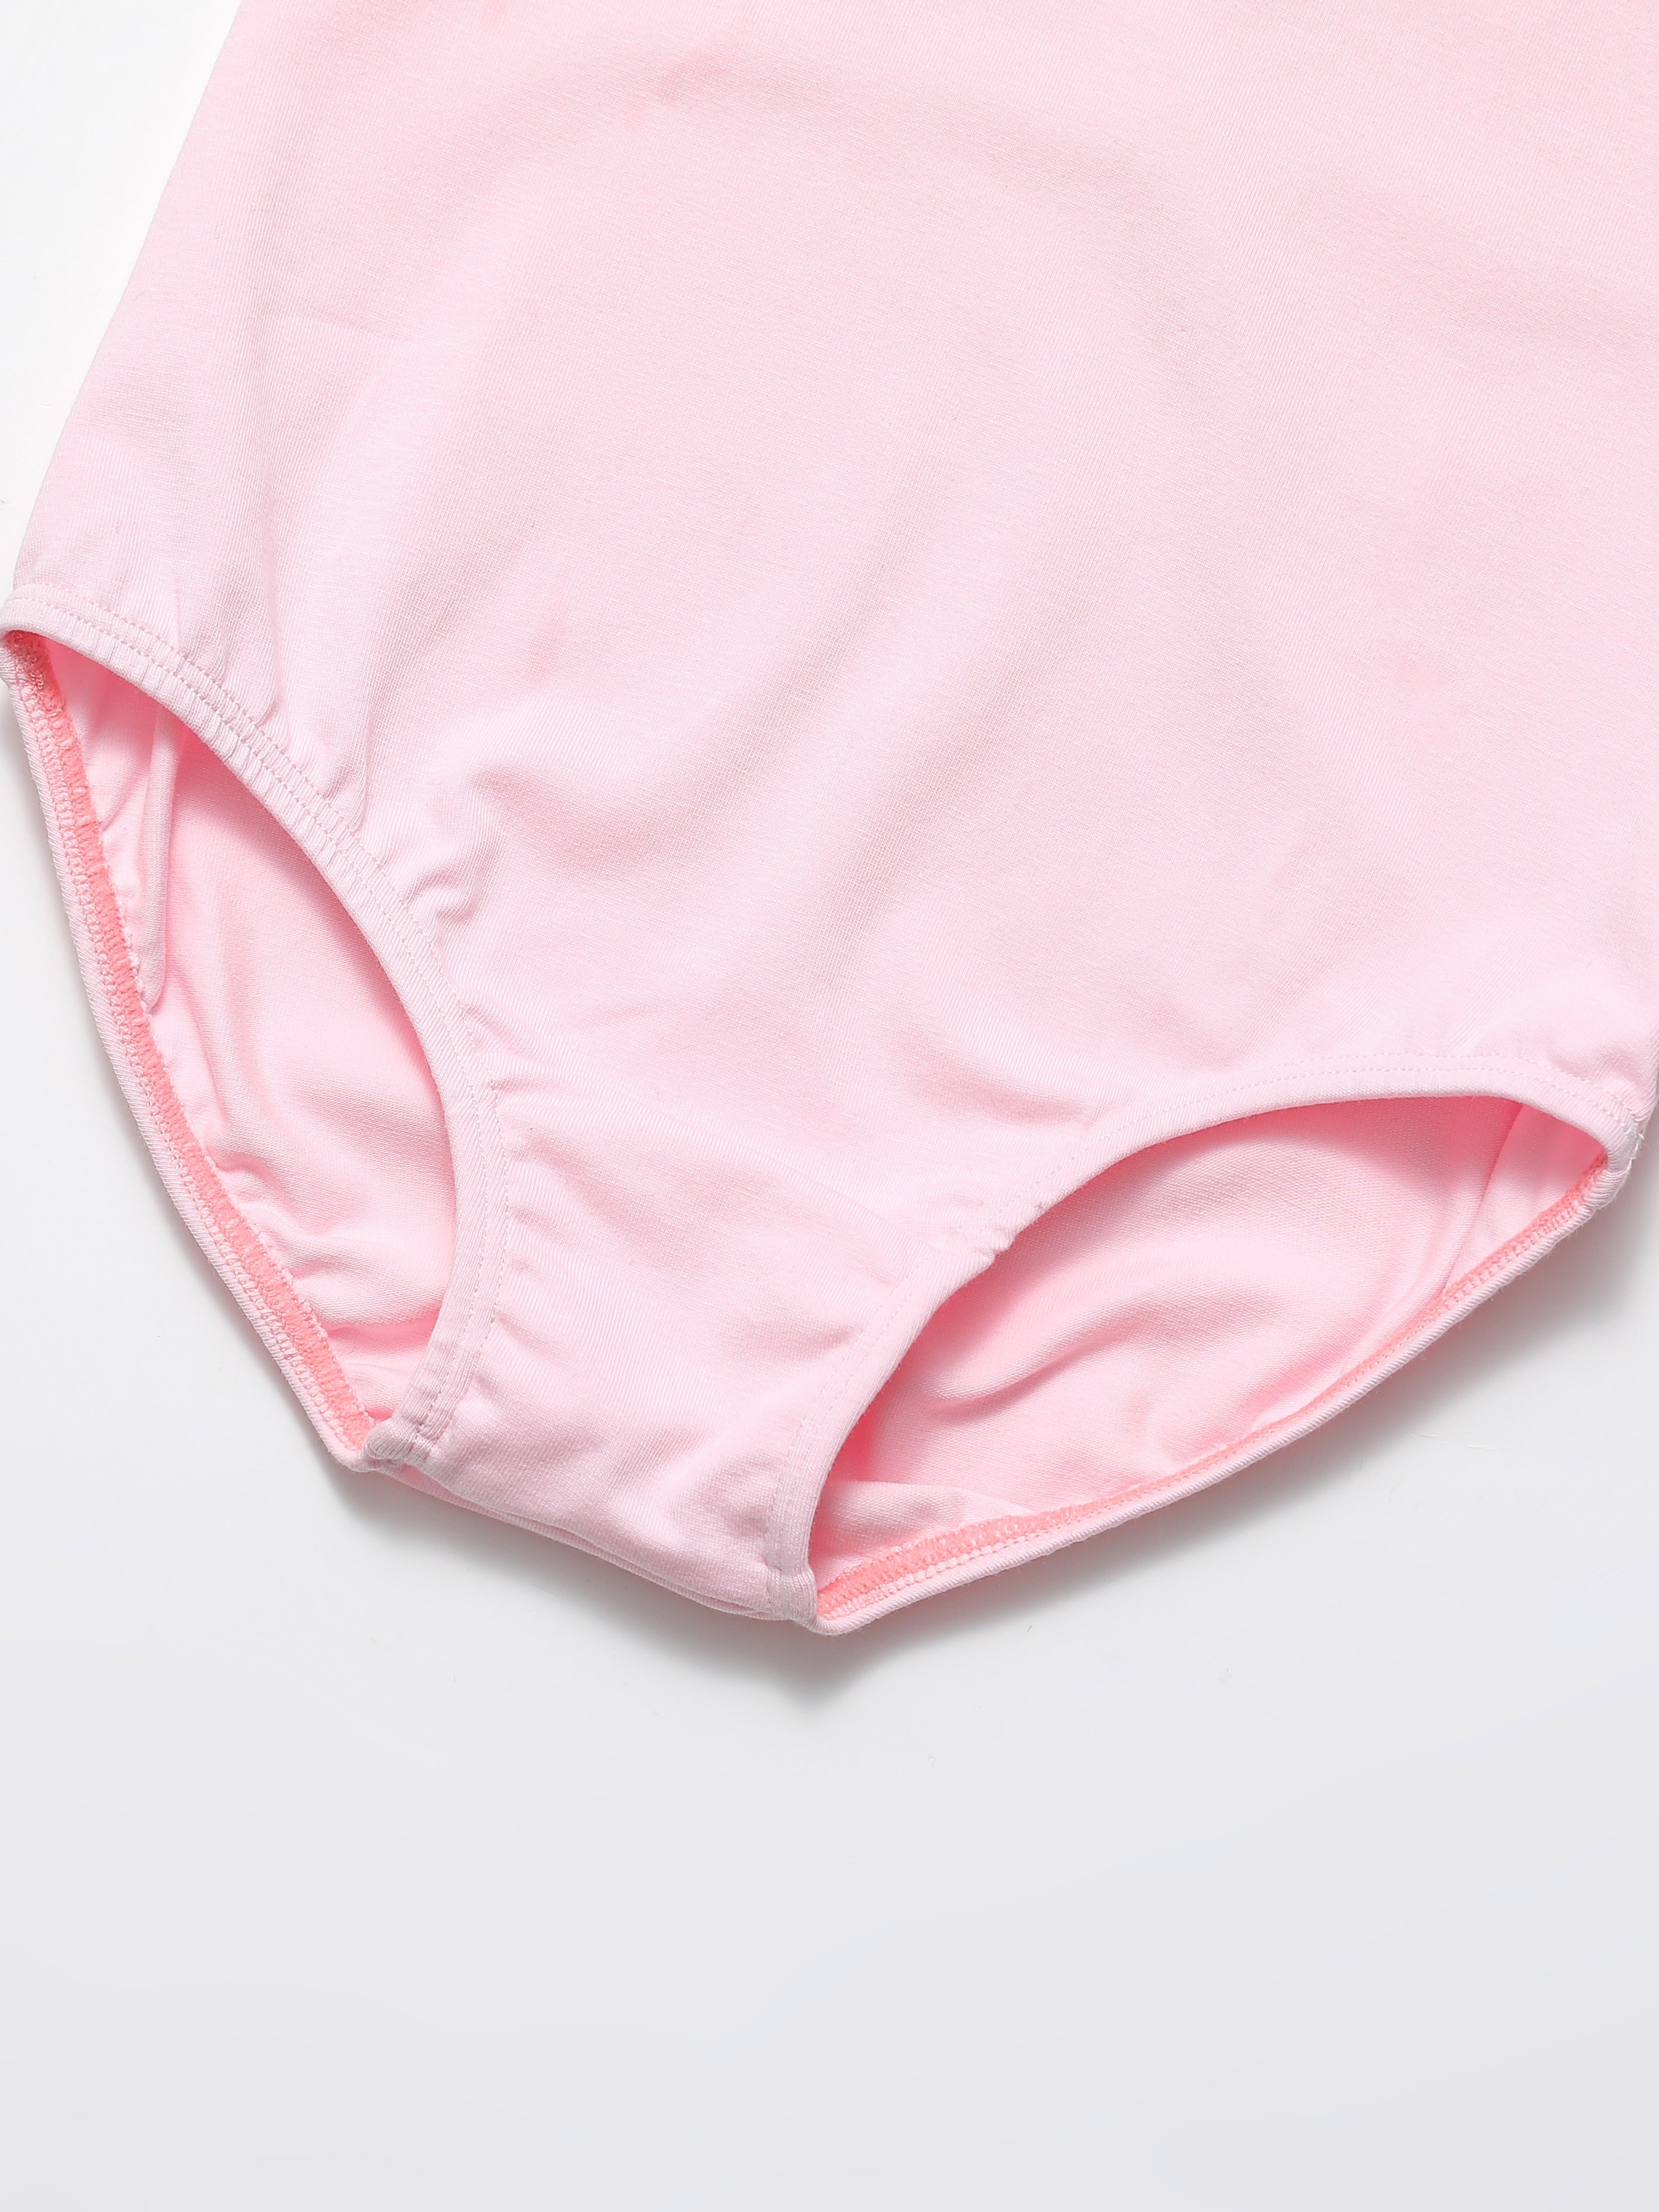 New Design underwear leotard For Unisex Use 